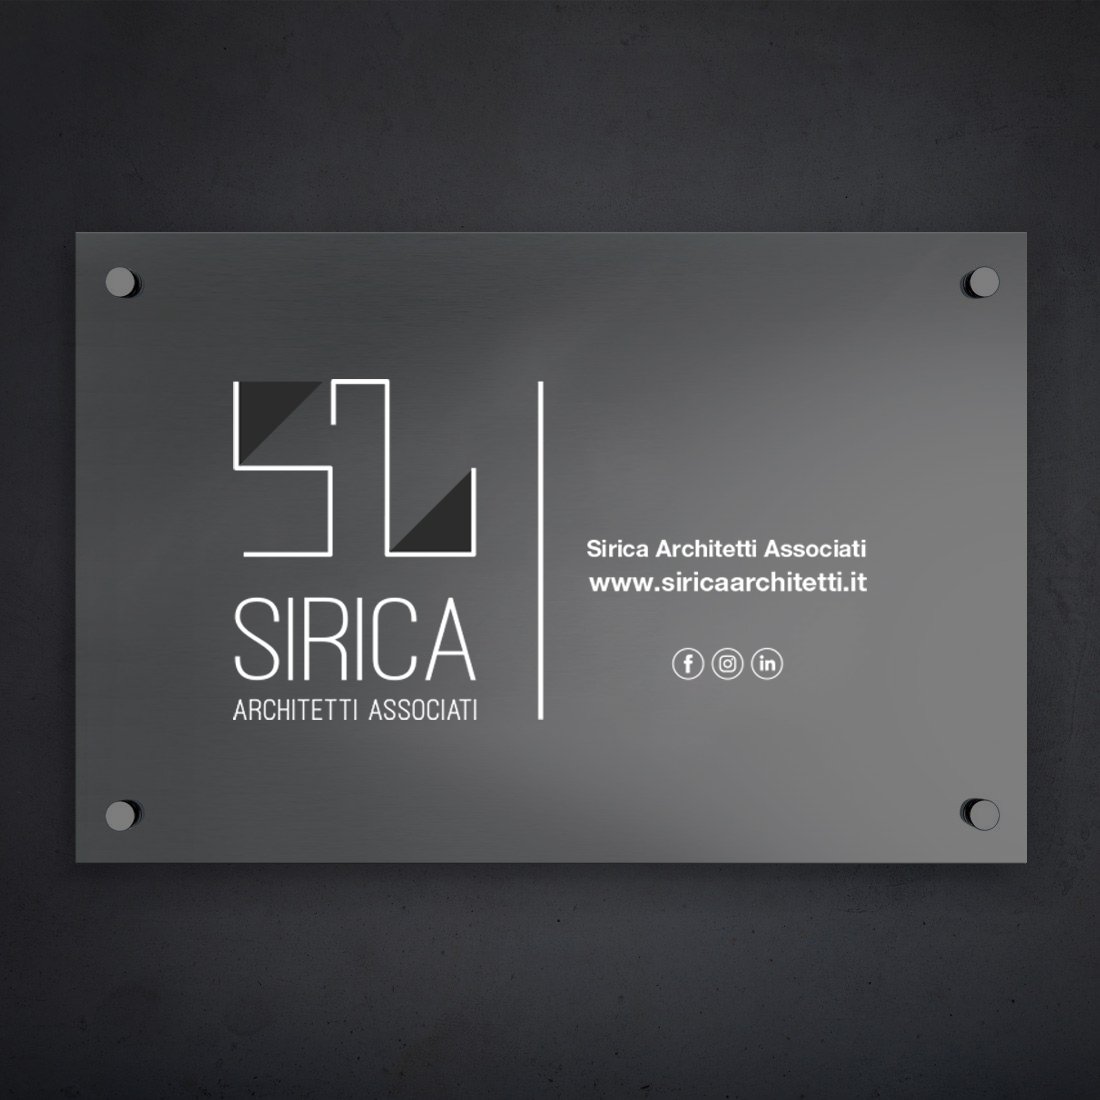 Sirica - I'M comunicazione